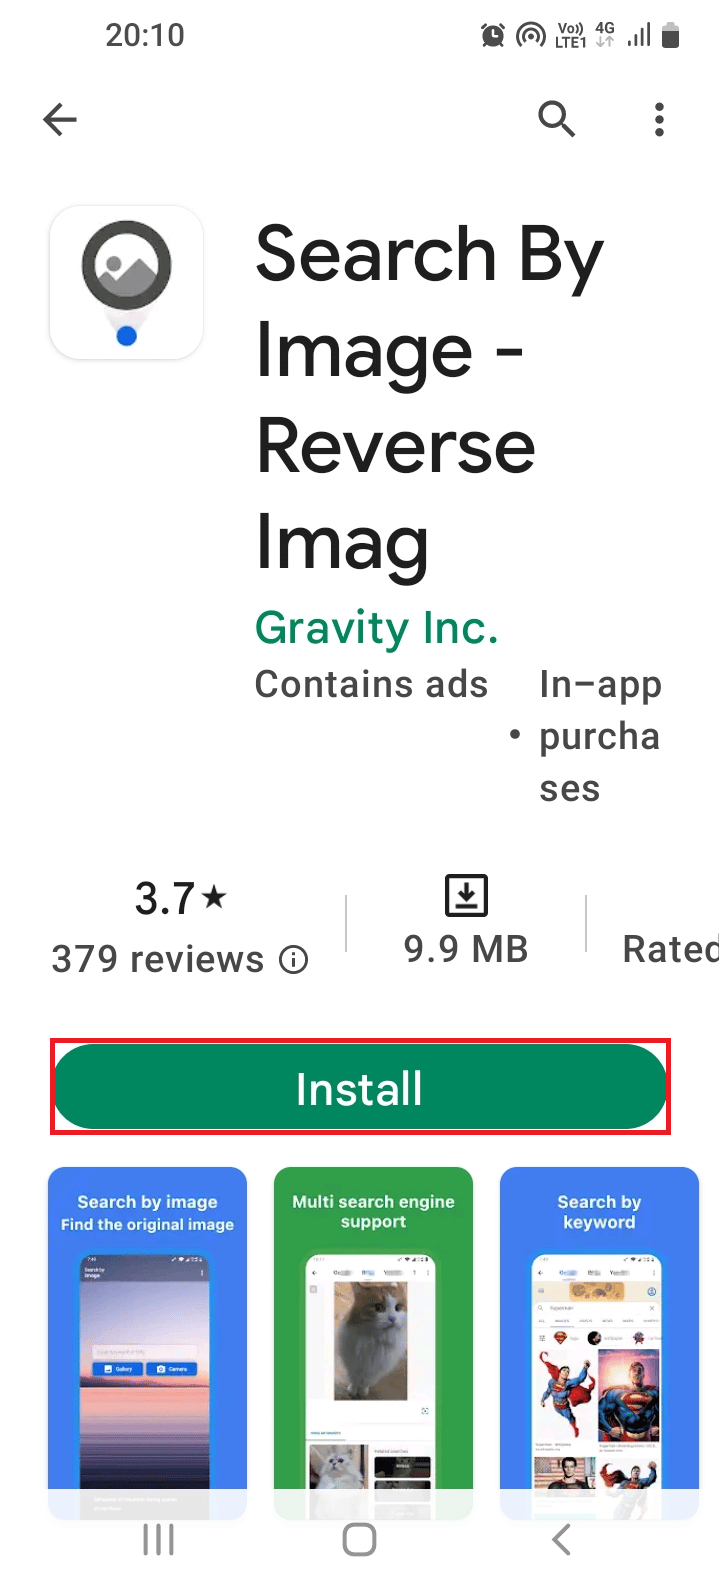 Ricerca per immagine Reverse Imag | Come trovare qualcuno su Facebook usando un'immagine